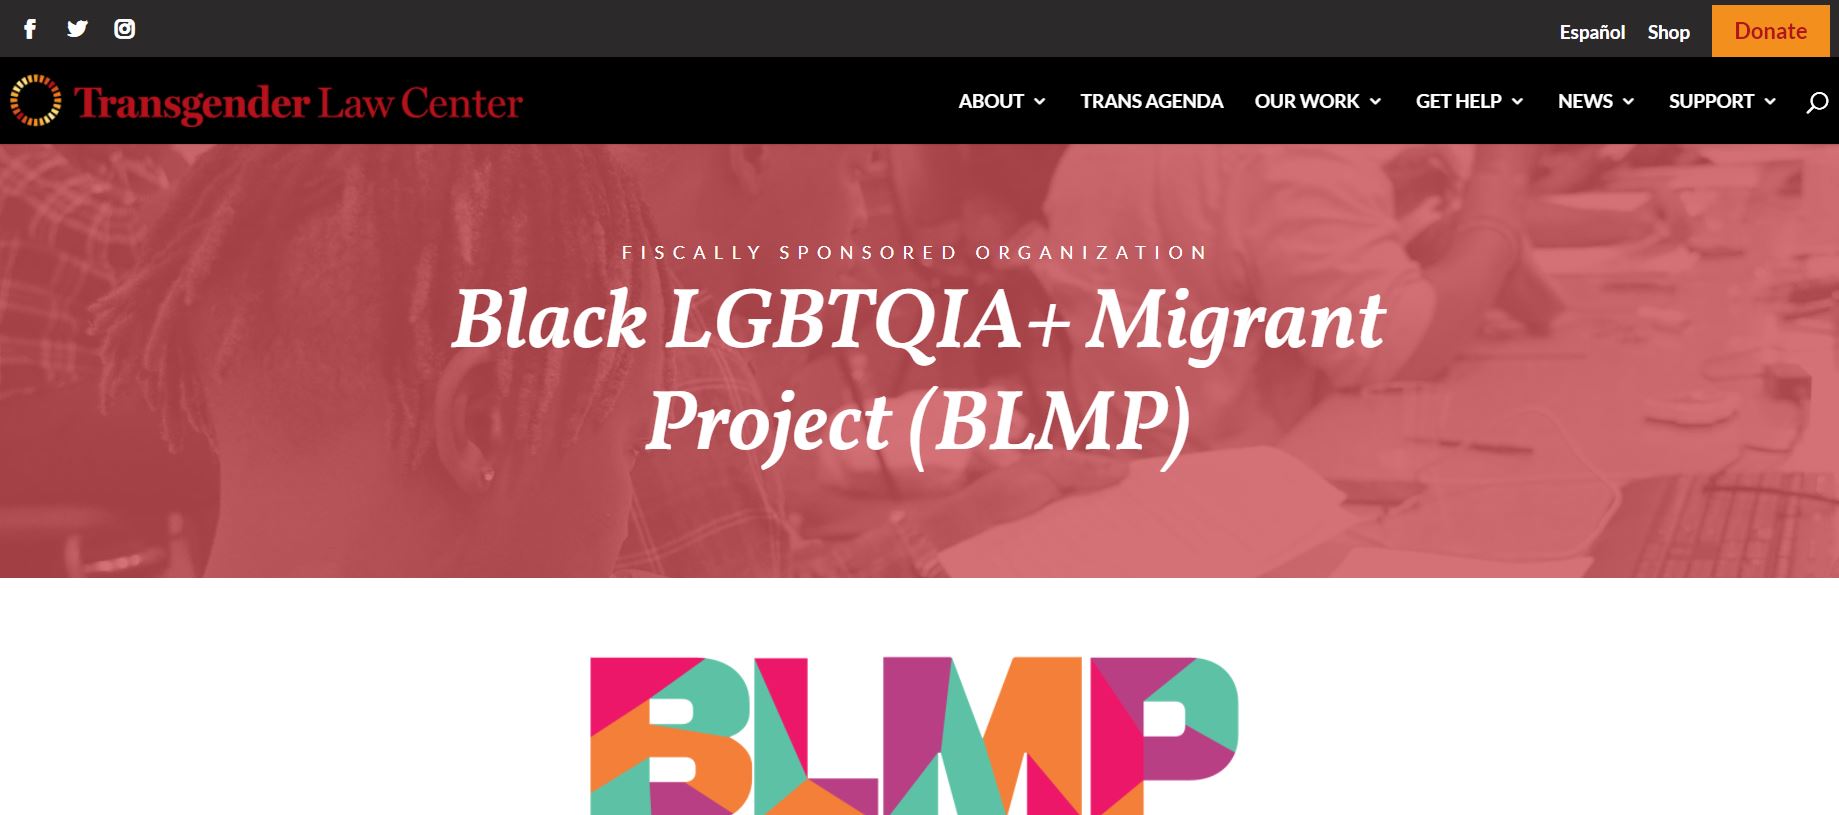 BLMP (Black LGBTQ+ Migrant Project)